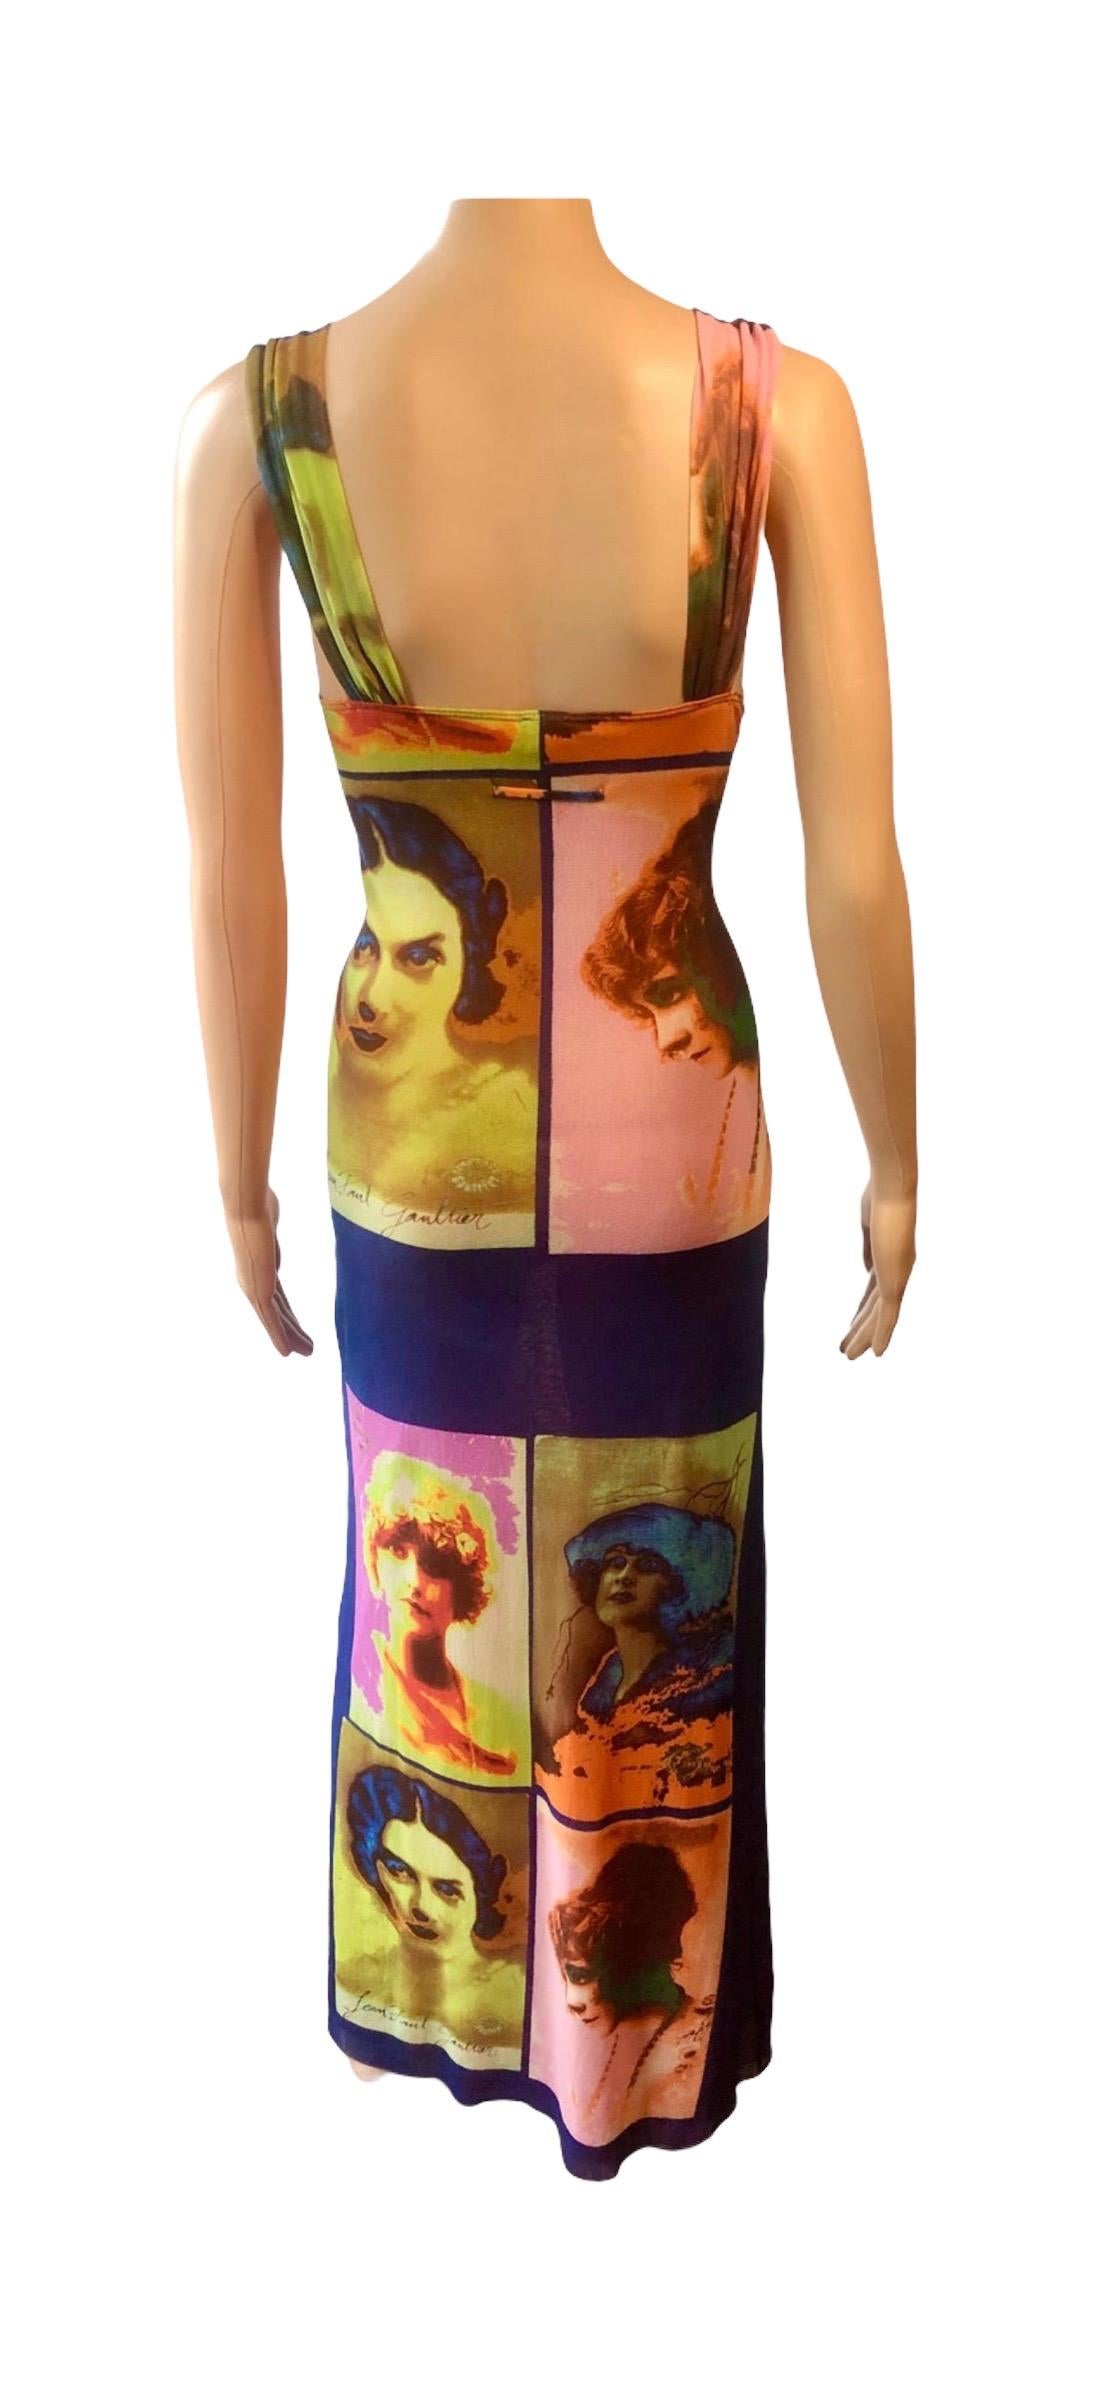 Jean Paul Gaultier Soleil S/S 2002 Vintage “Portraits” Mesh Maxi Dress  For Sale 6